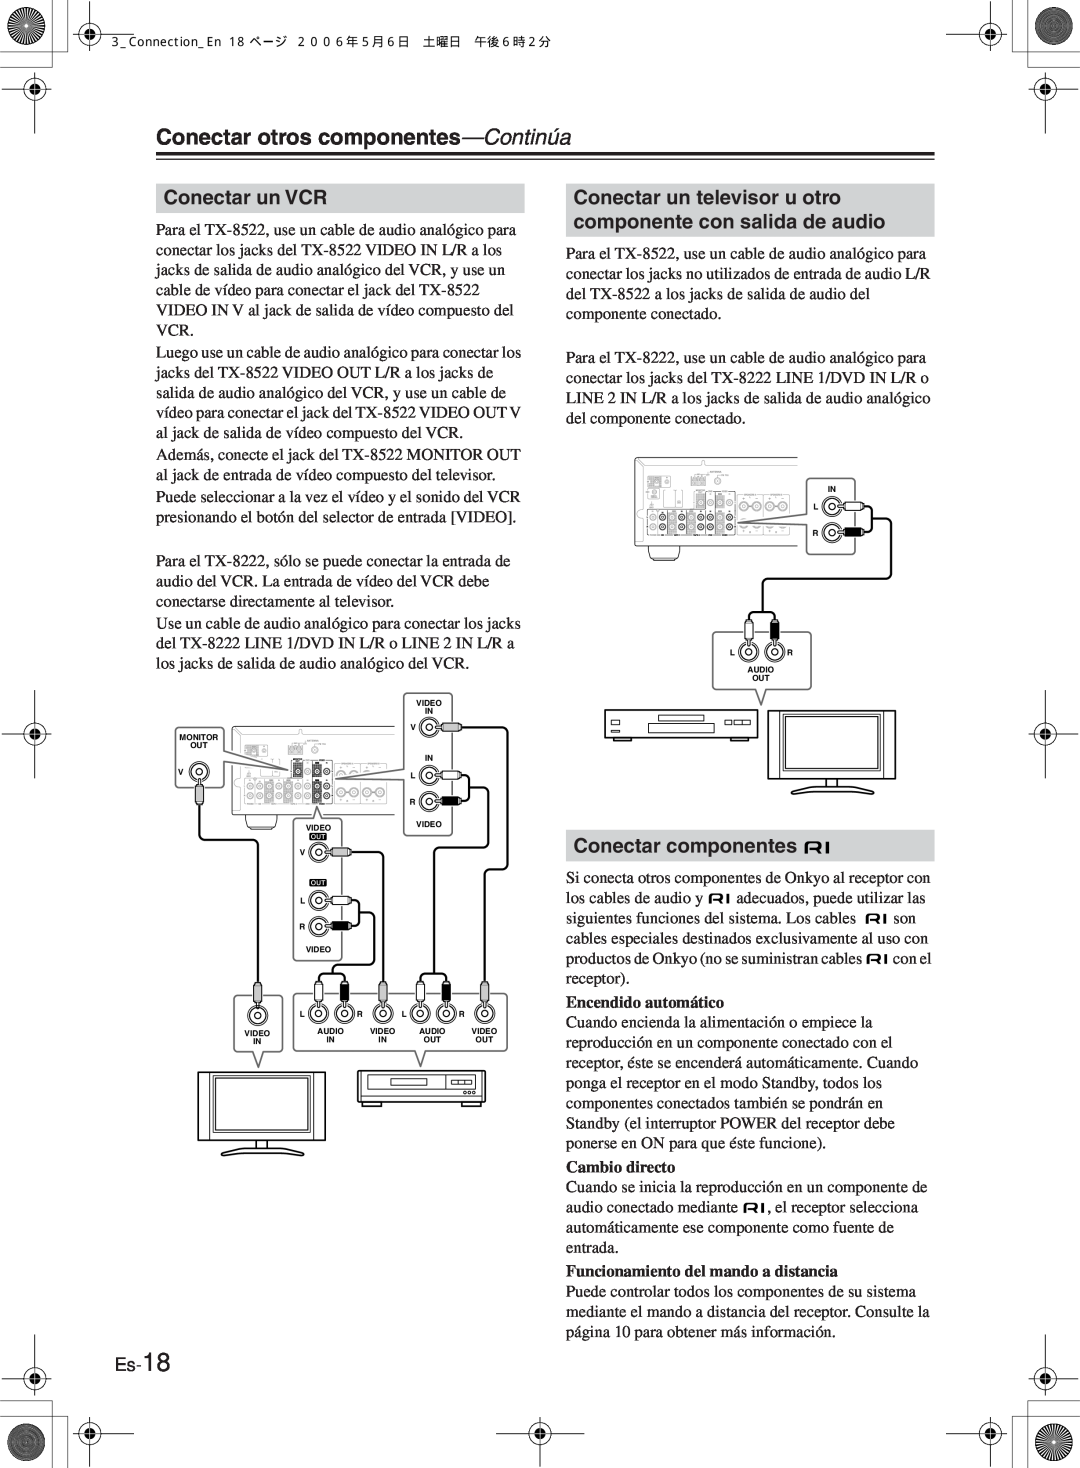 Onkyo TX-8222 Conectar un VCR, Conectar componentes, Es-18, Conectar otros componentes—Continúa, Encendido automático 